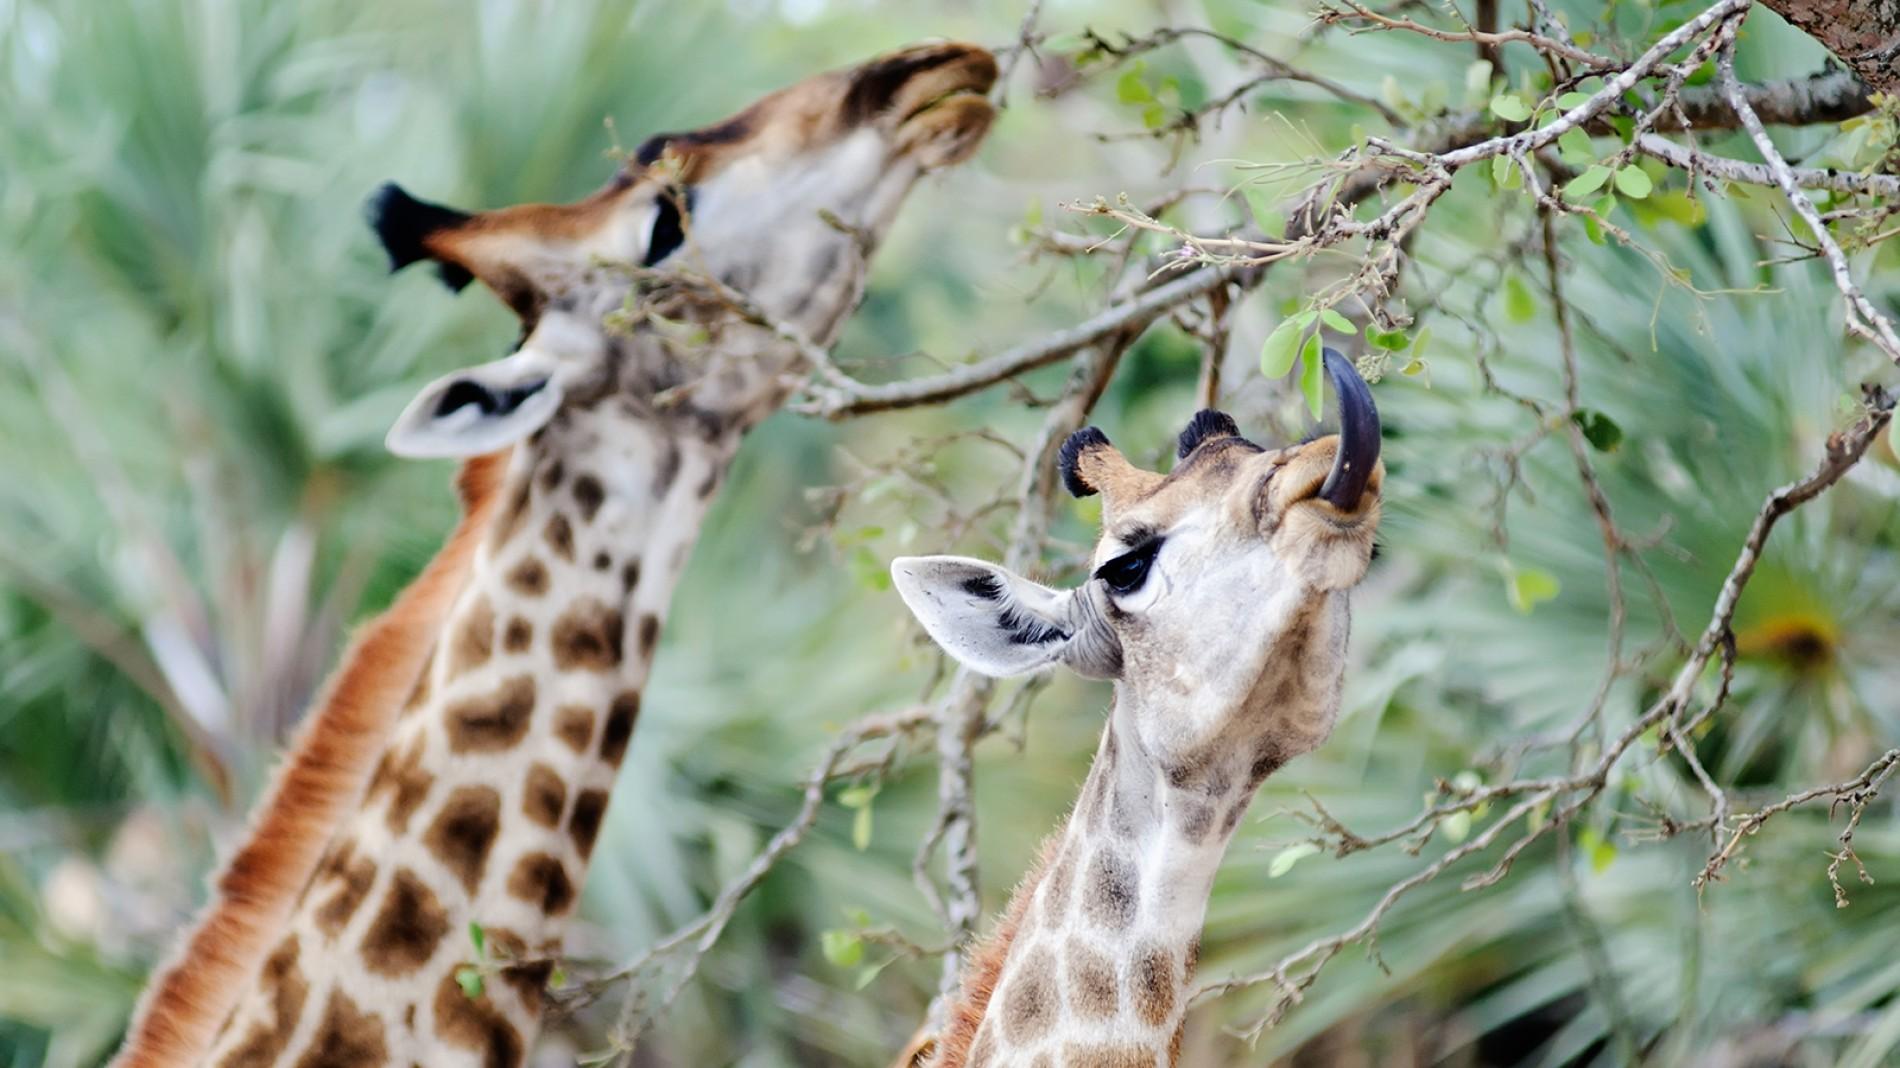 giraffe-pair-eating.ngsversion.1411232116936.adapt.1900.1.jpg